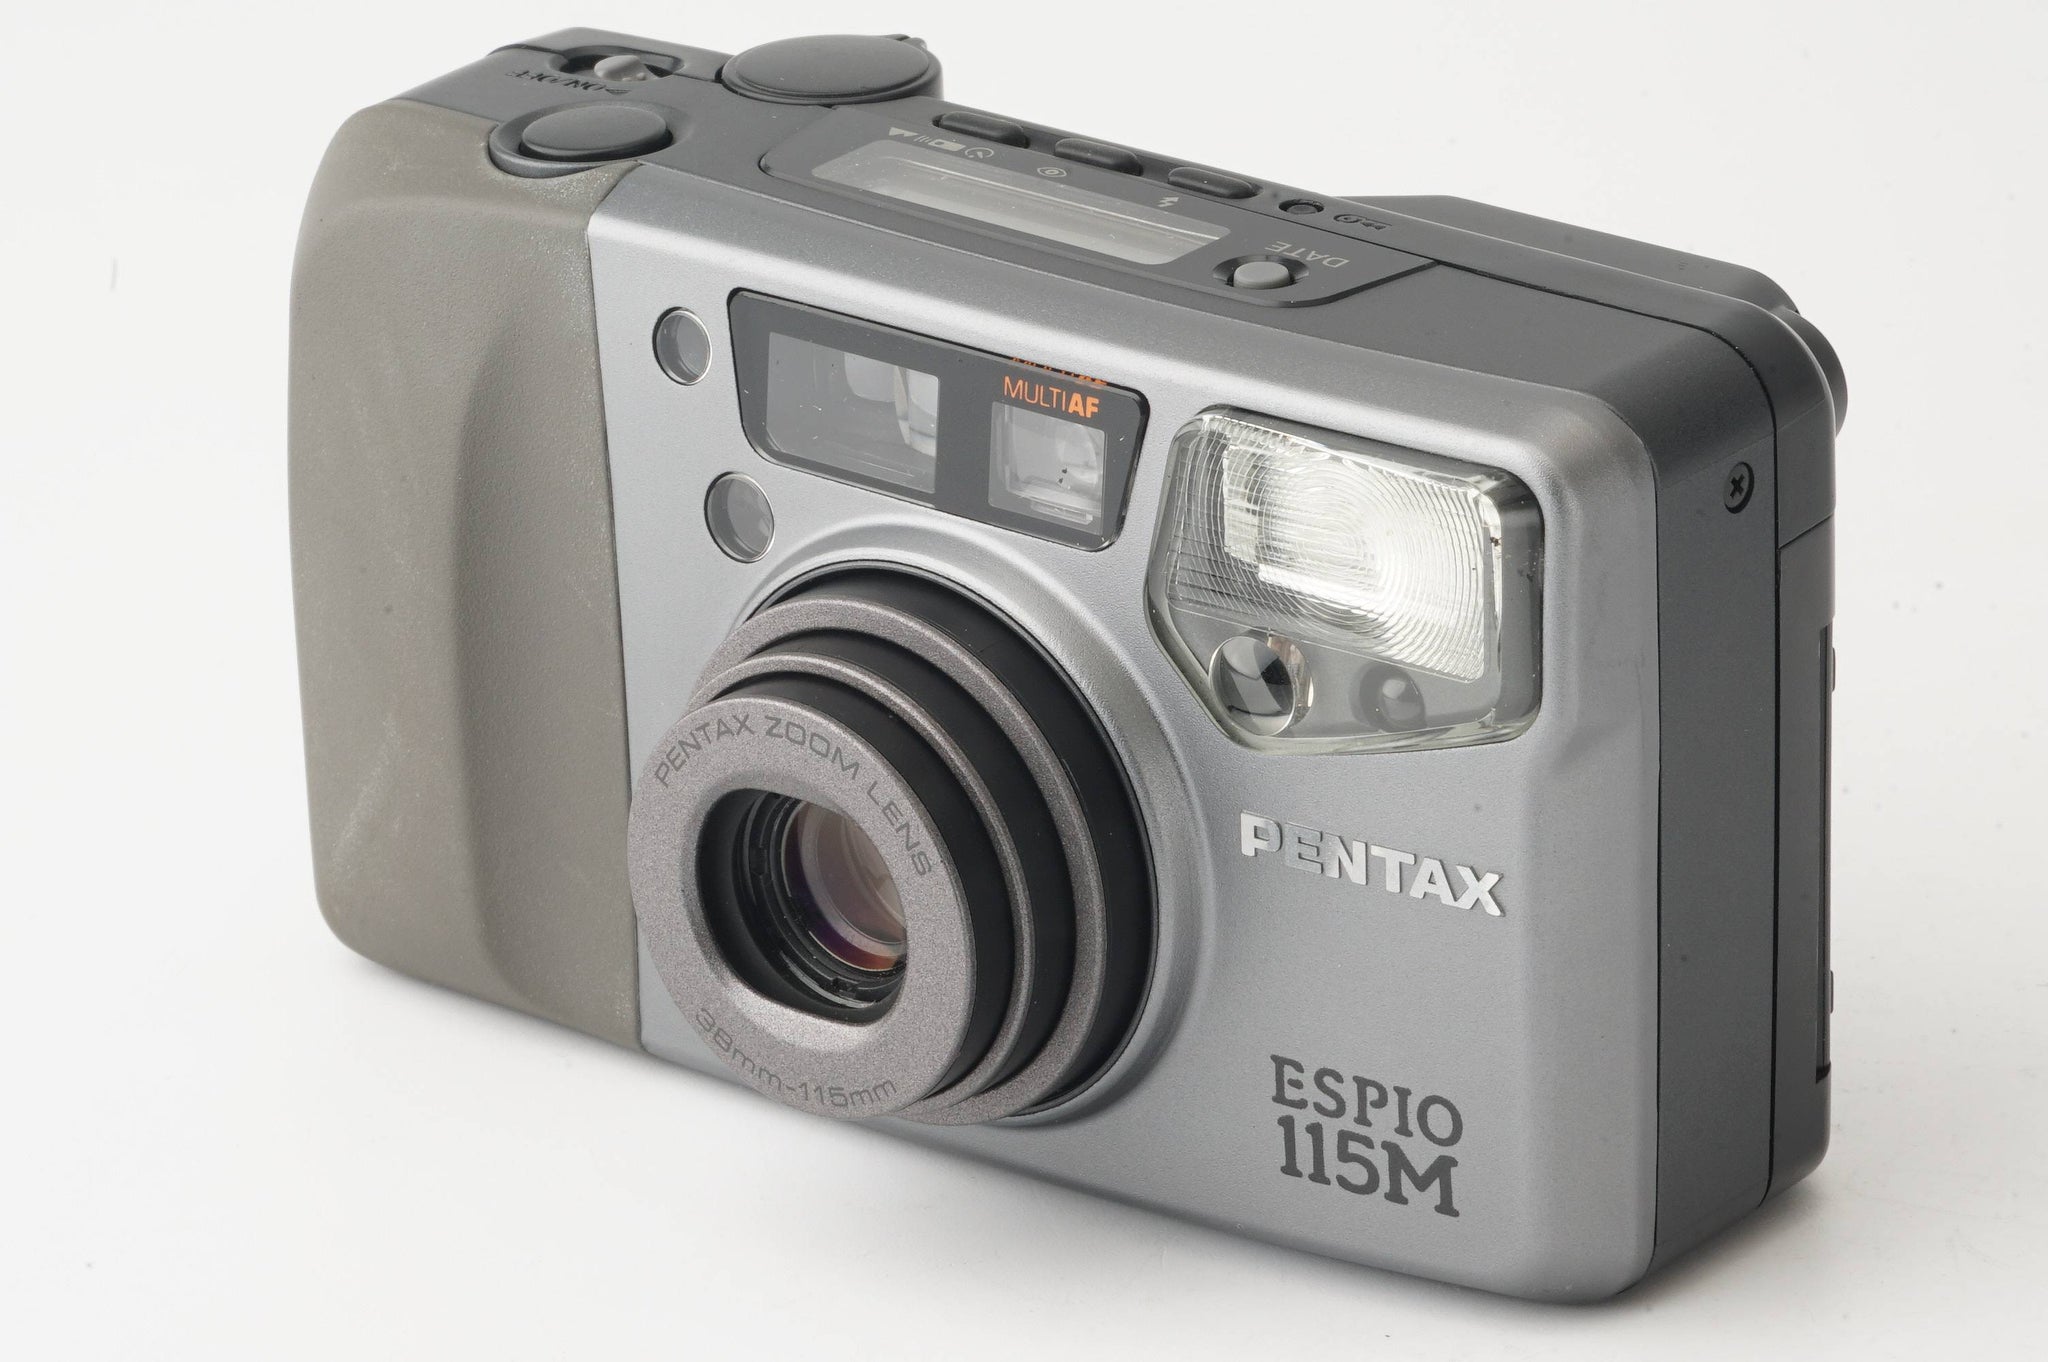 ペンタックス Pentax ESPIO 115M / ZOOM 38-115mm – Natural